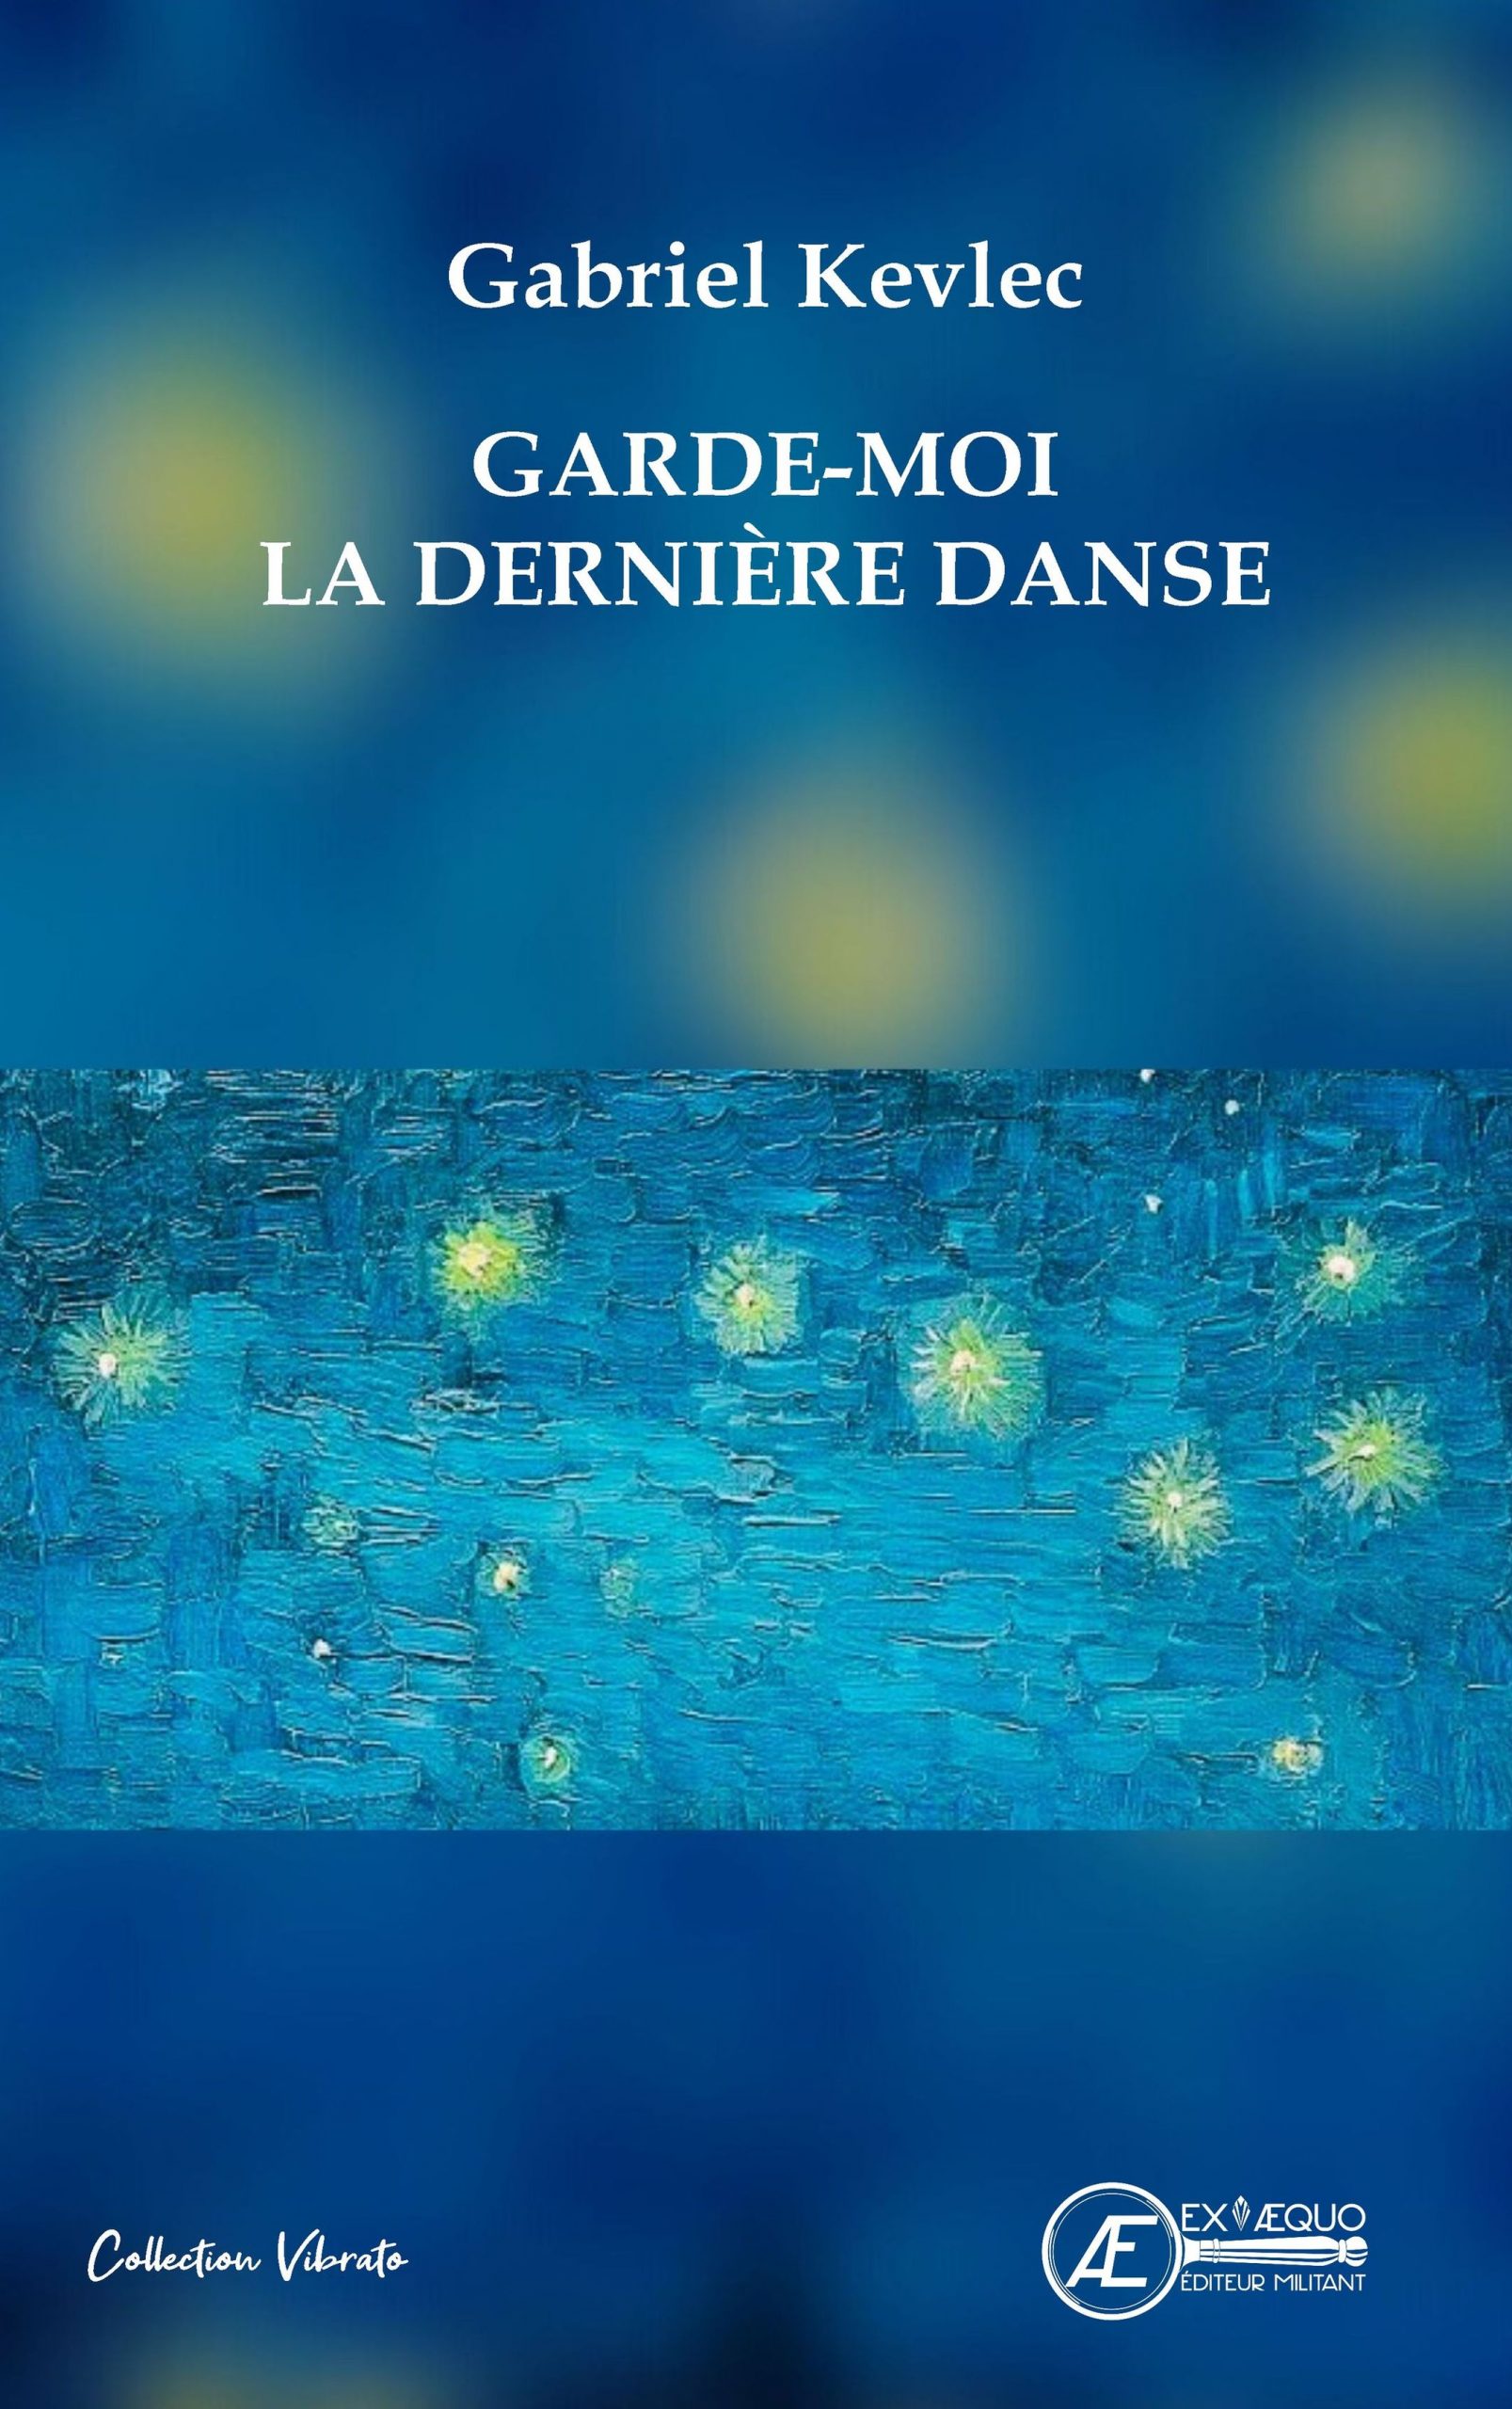 You are currently viewing Garde-moi la dernière danse, de Gabriel Kevlec